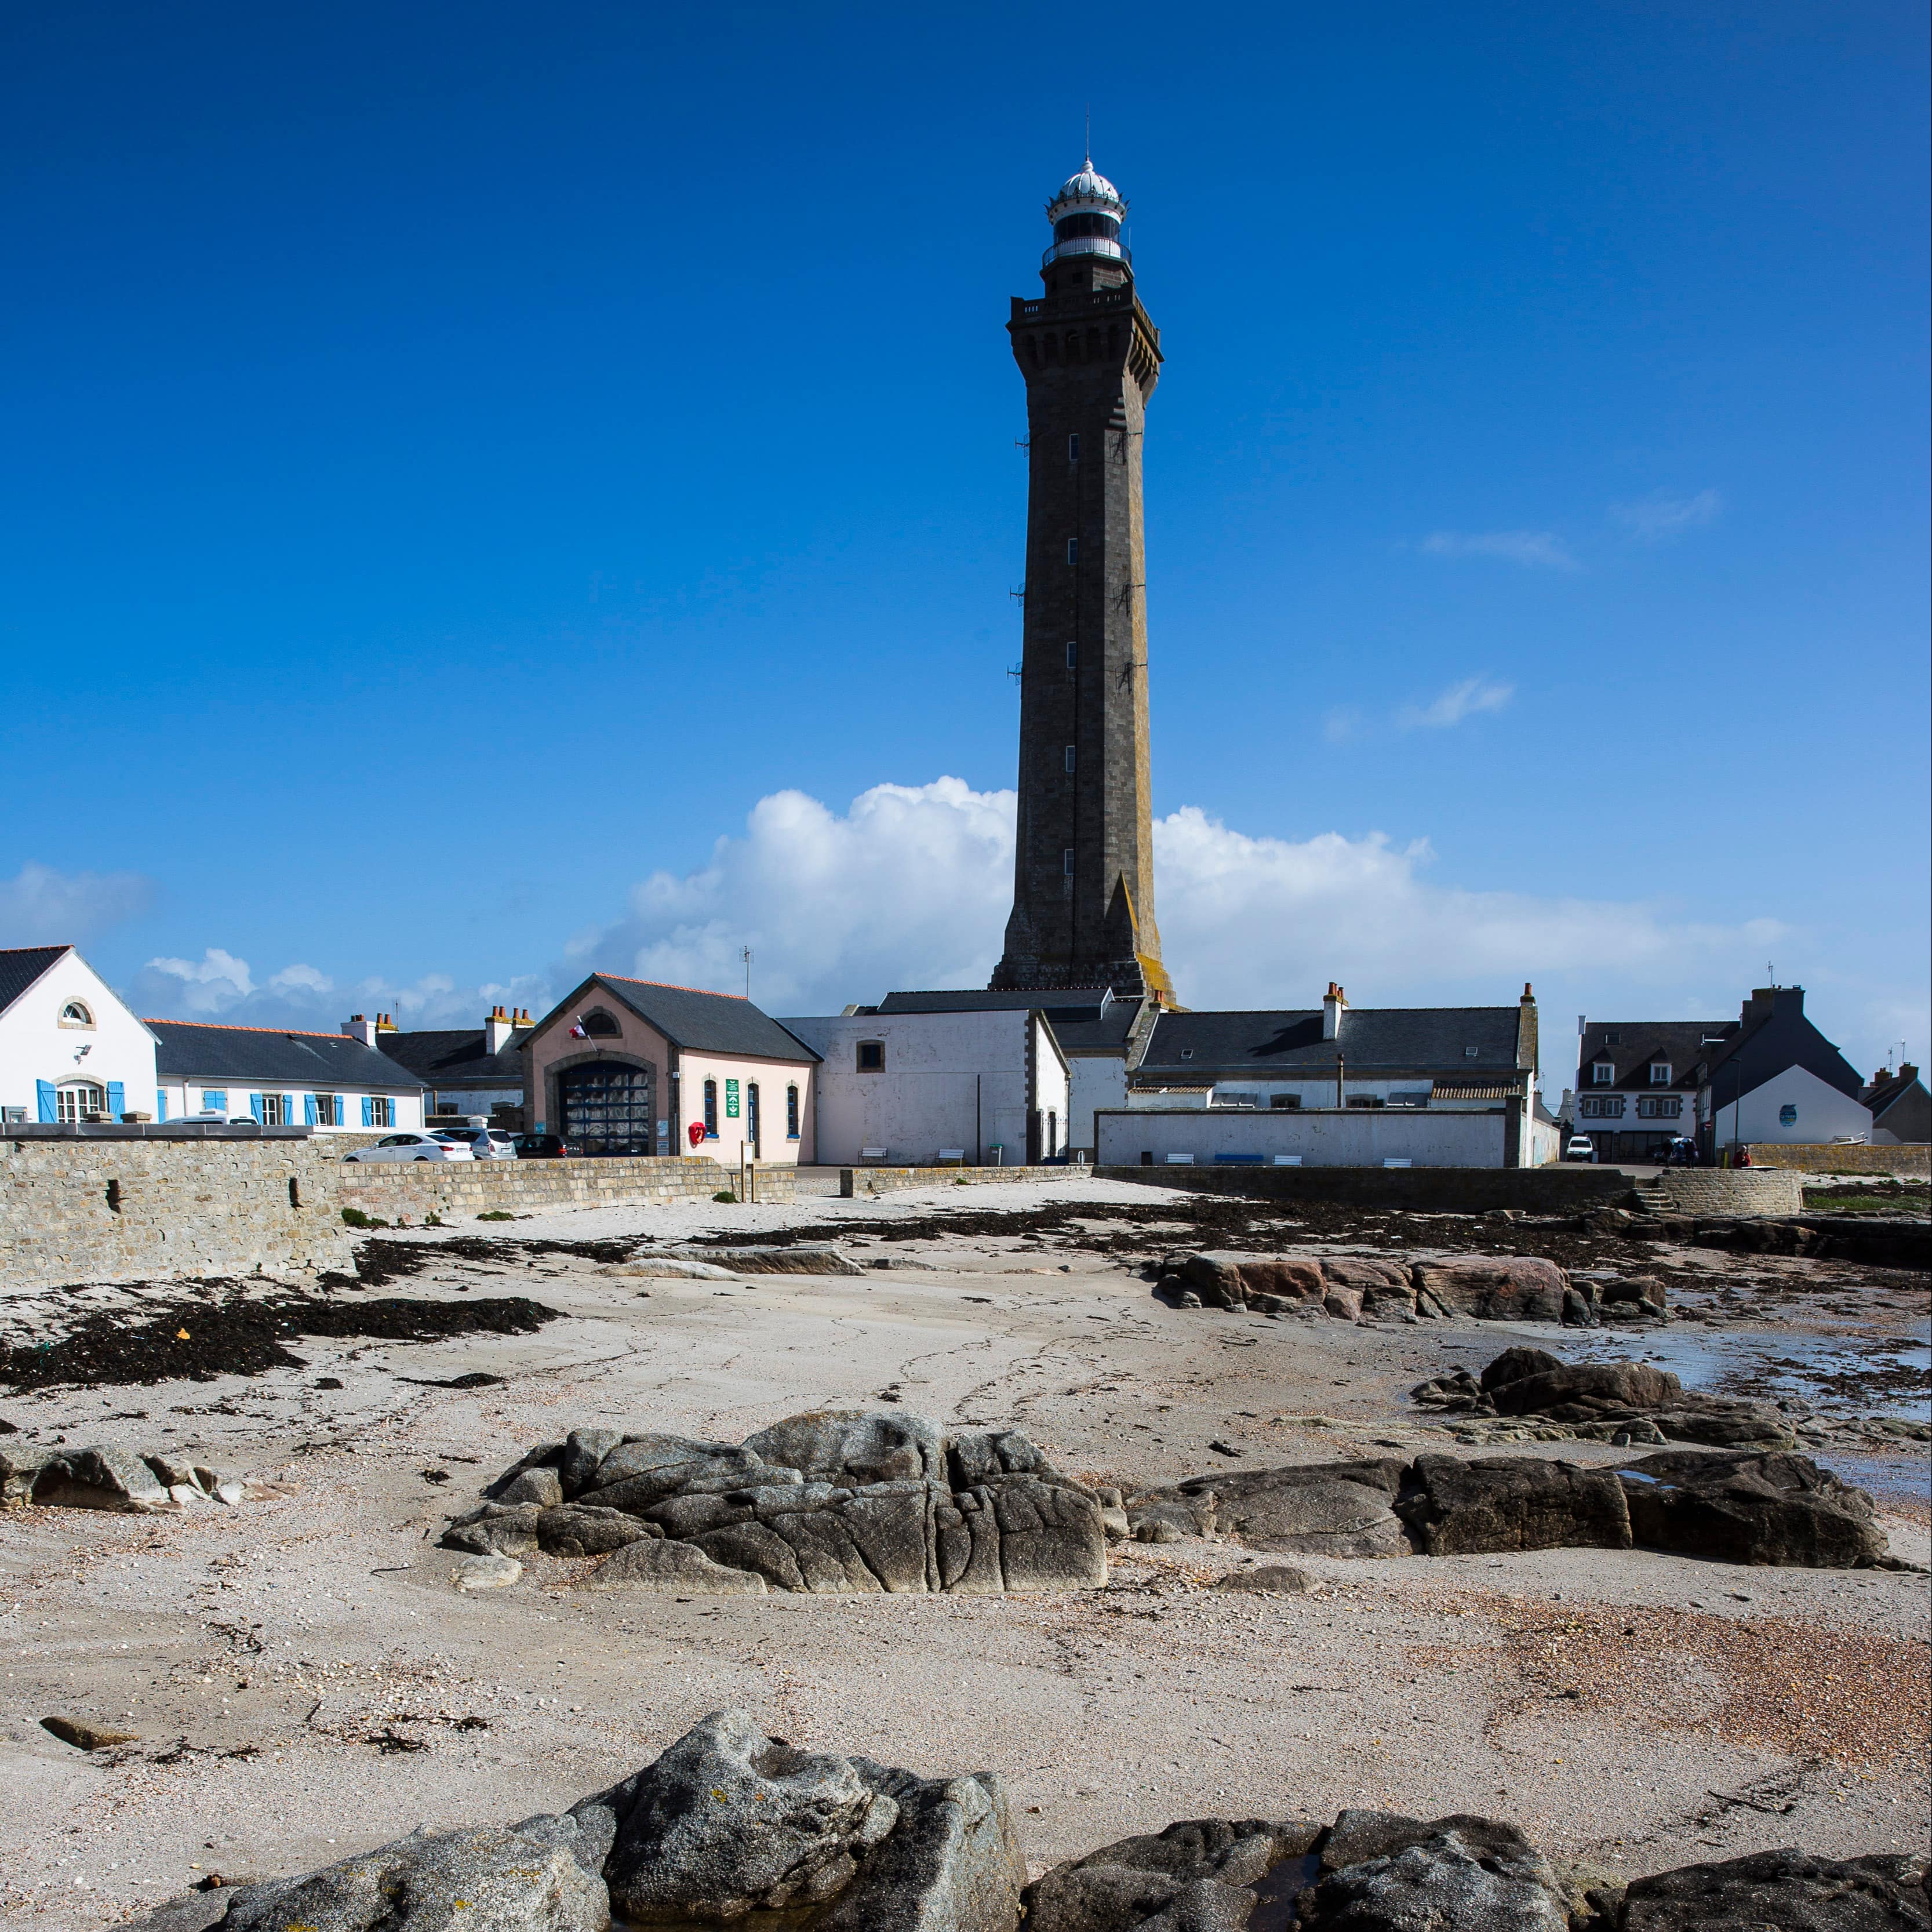 Vacances en famille dans le Finistère : montez en haut du phare de Penmarch